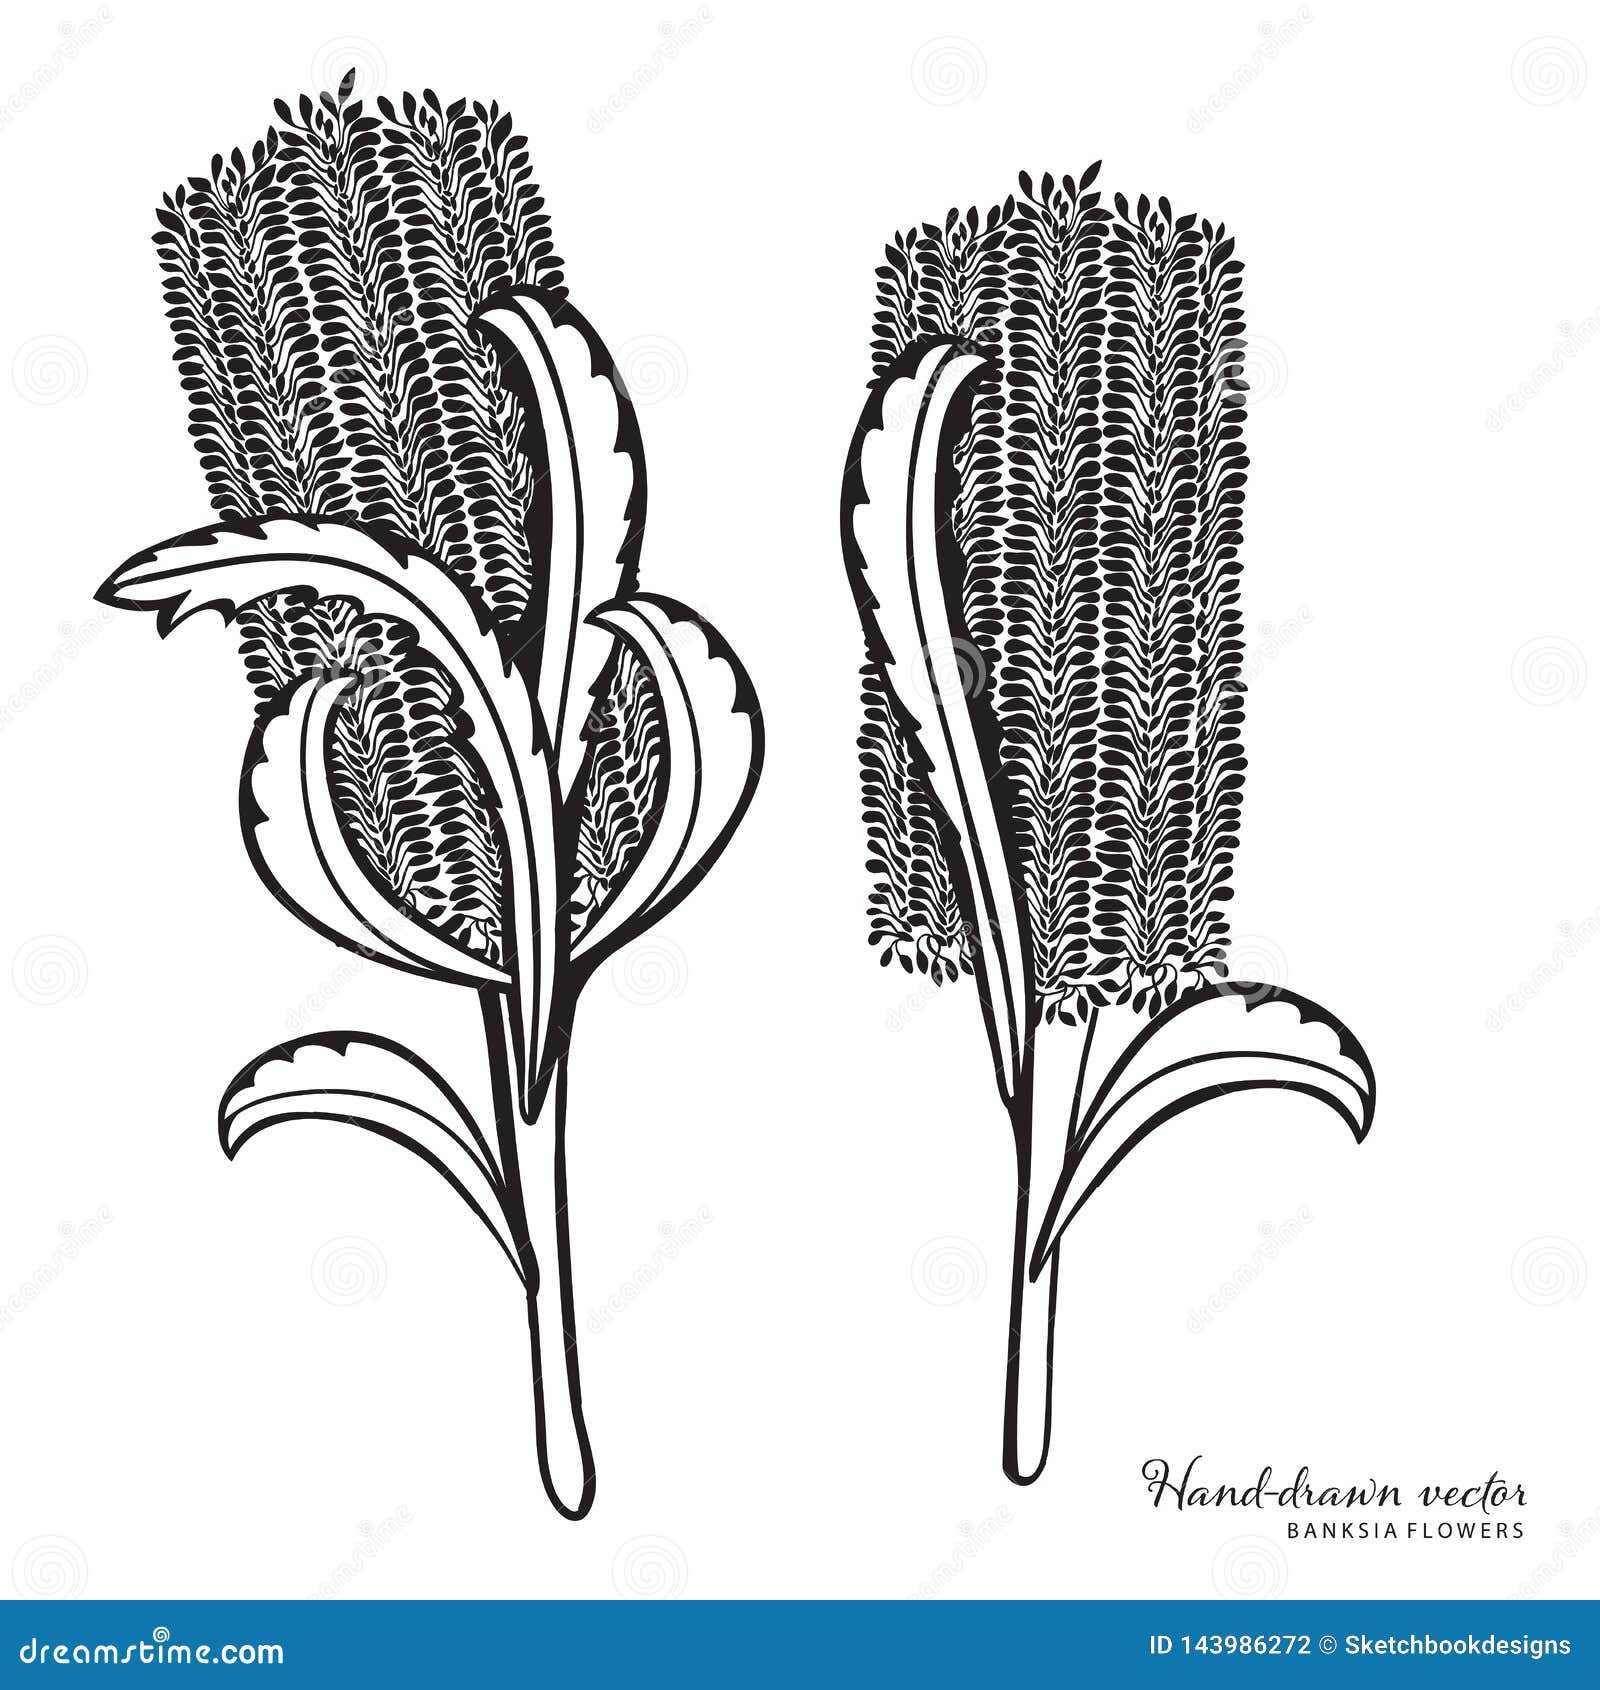 hand-drawn australian banksia  illustraiton